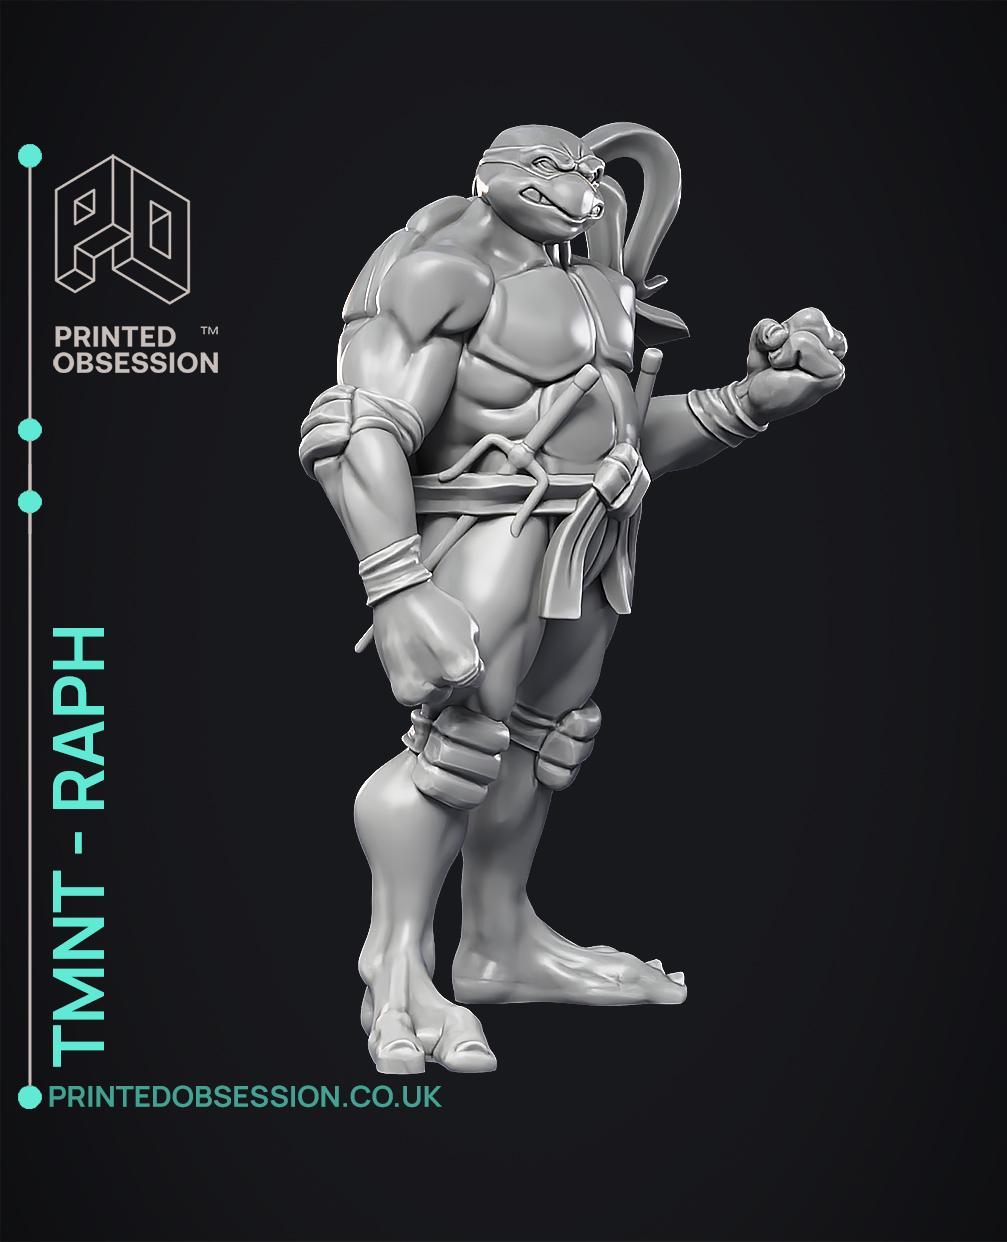 Raphael - TMNT - Fan Art 3d model